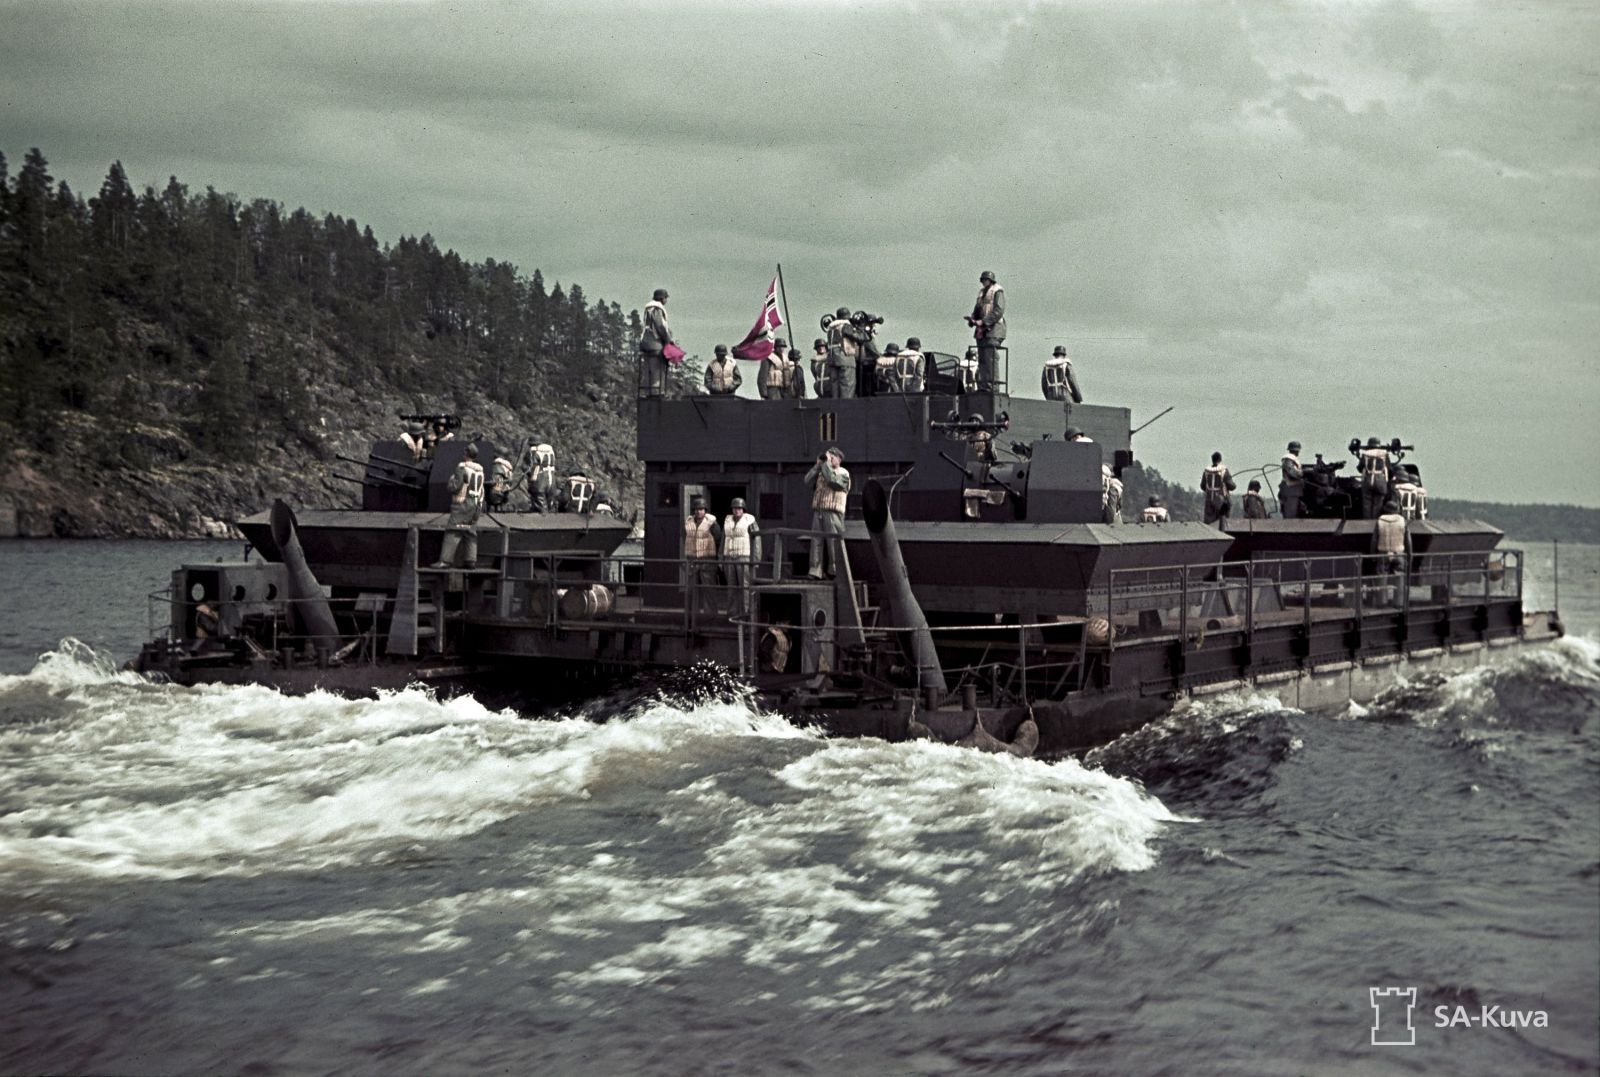 双方竭力争夺湖泊控制权,苏霍岛一战德军彻底放弃夺占湖上支撑点